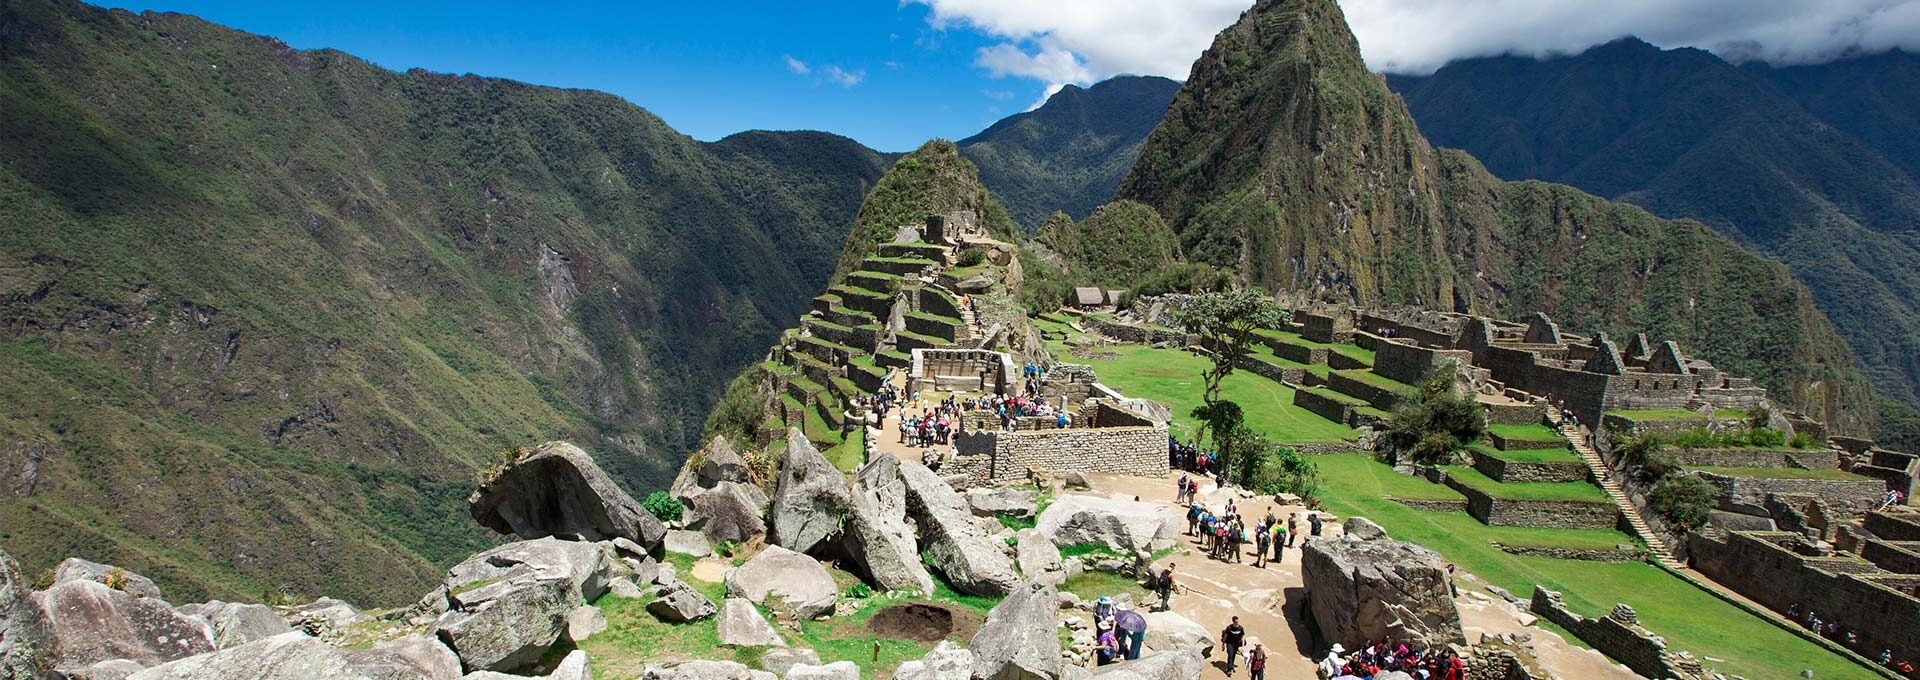 Machu Picchu 6 days | Humantay lake - Machu Picchu